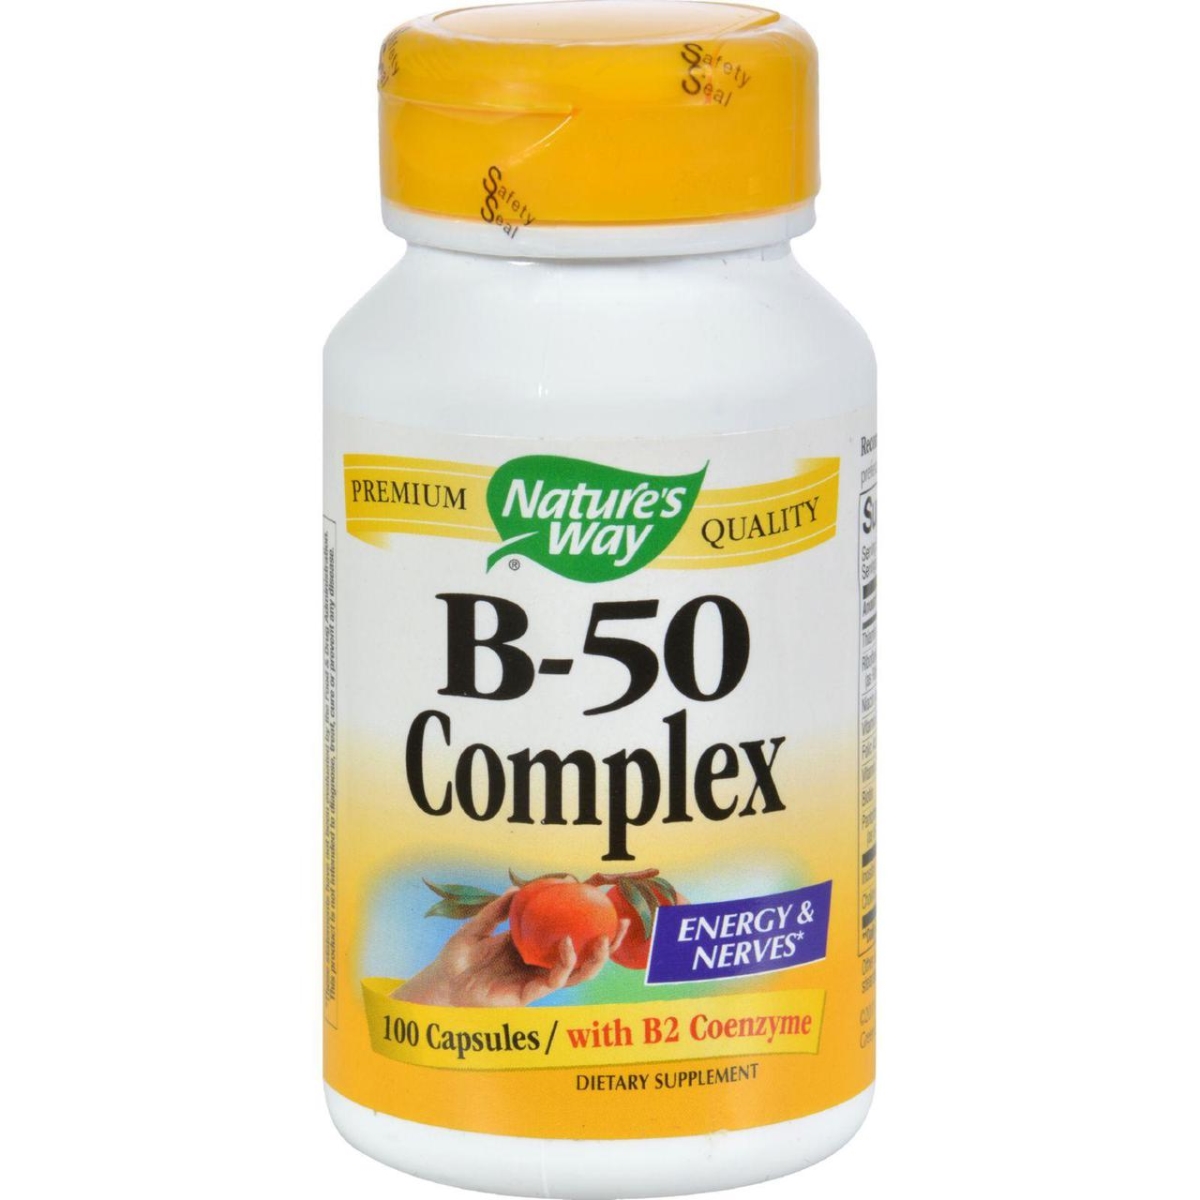 Hg0815688 Vitamin B-50 Complex - 100 Capsules